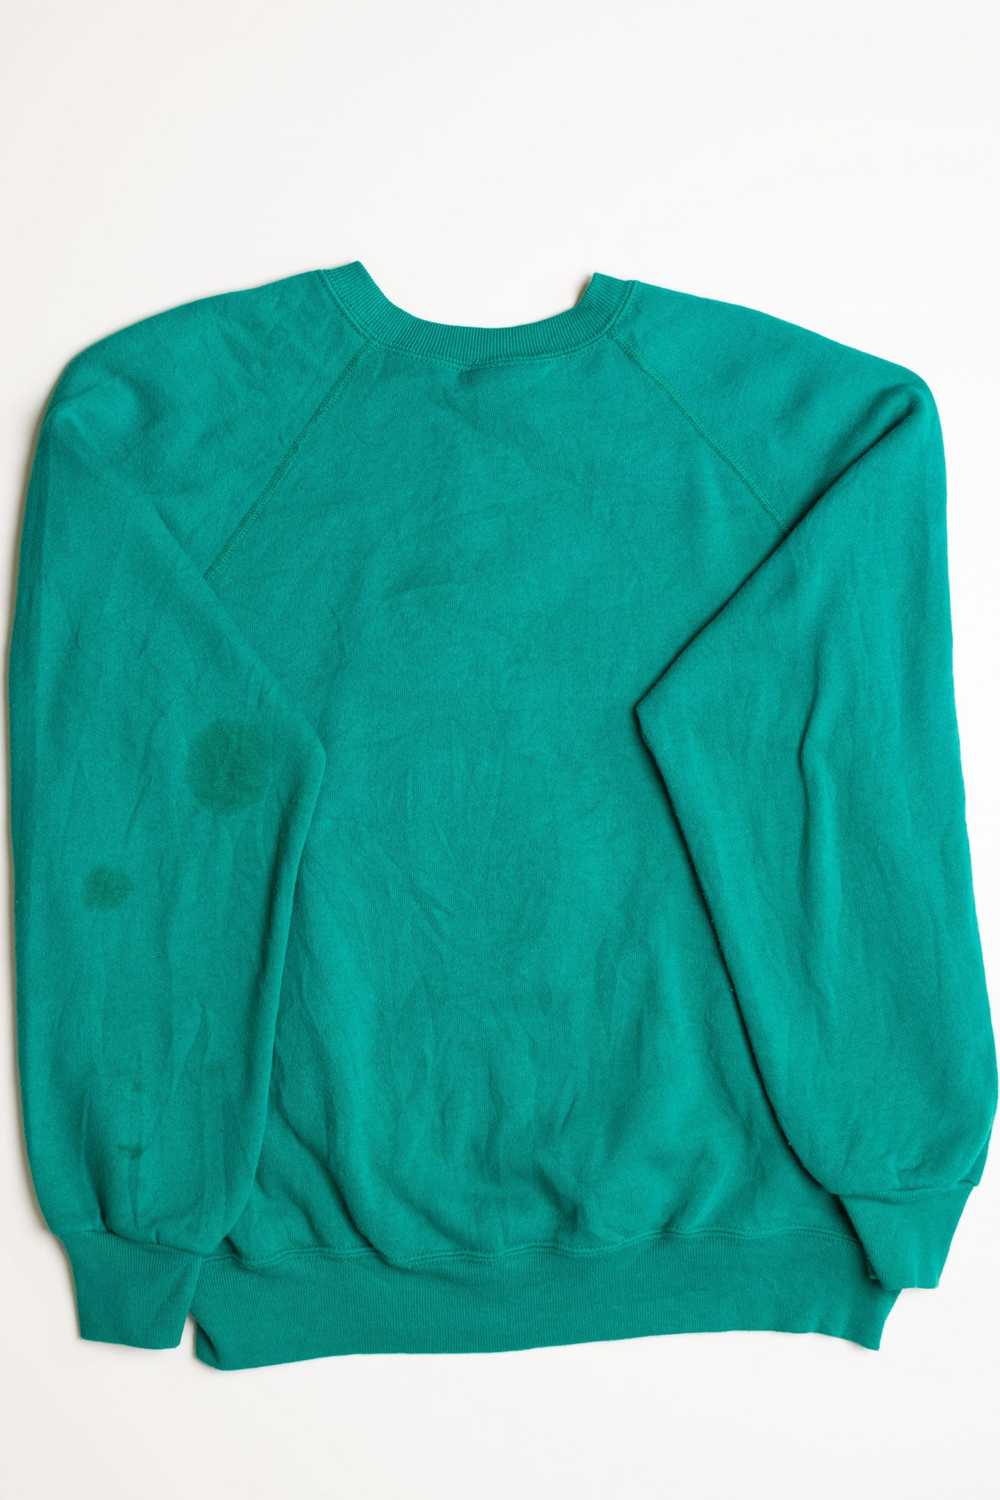 Green Ugly Christmas Sweatshirt 56898 - image 2